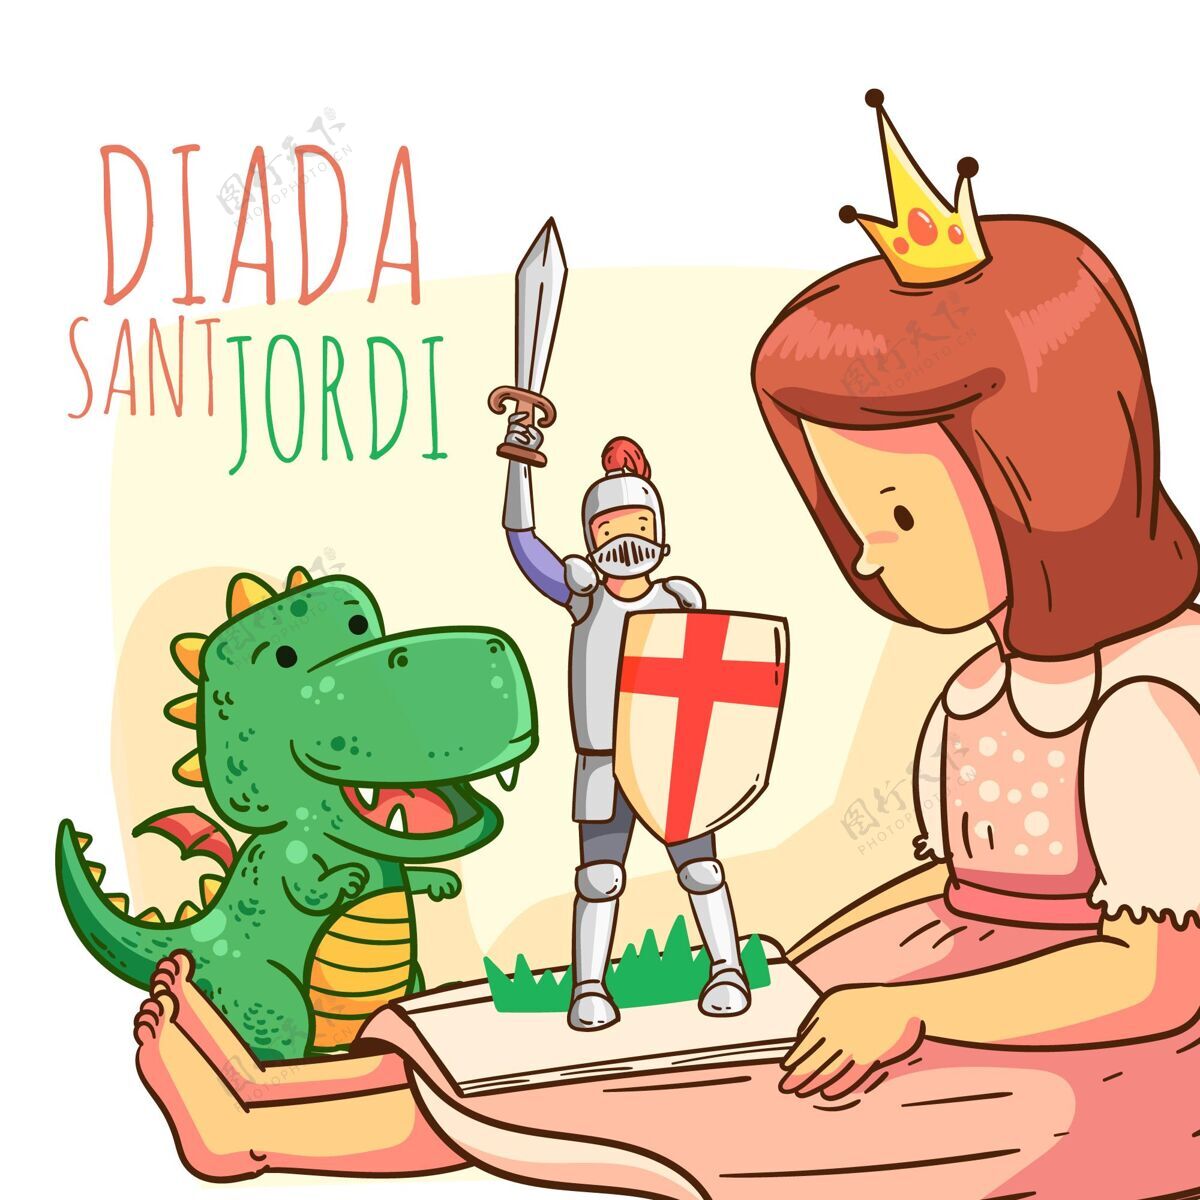 公主卡通迪亚达圣乔迪与骑士 龙和公主插图场合西班牙龙